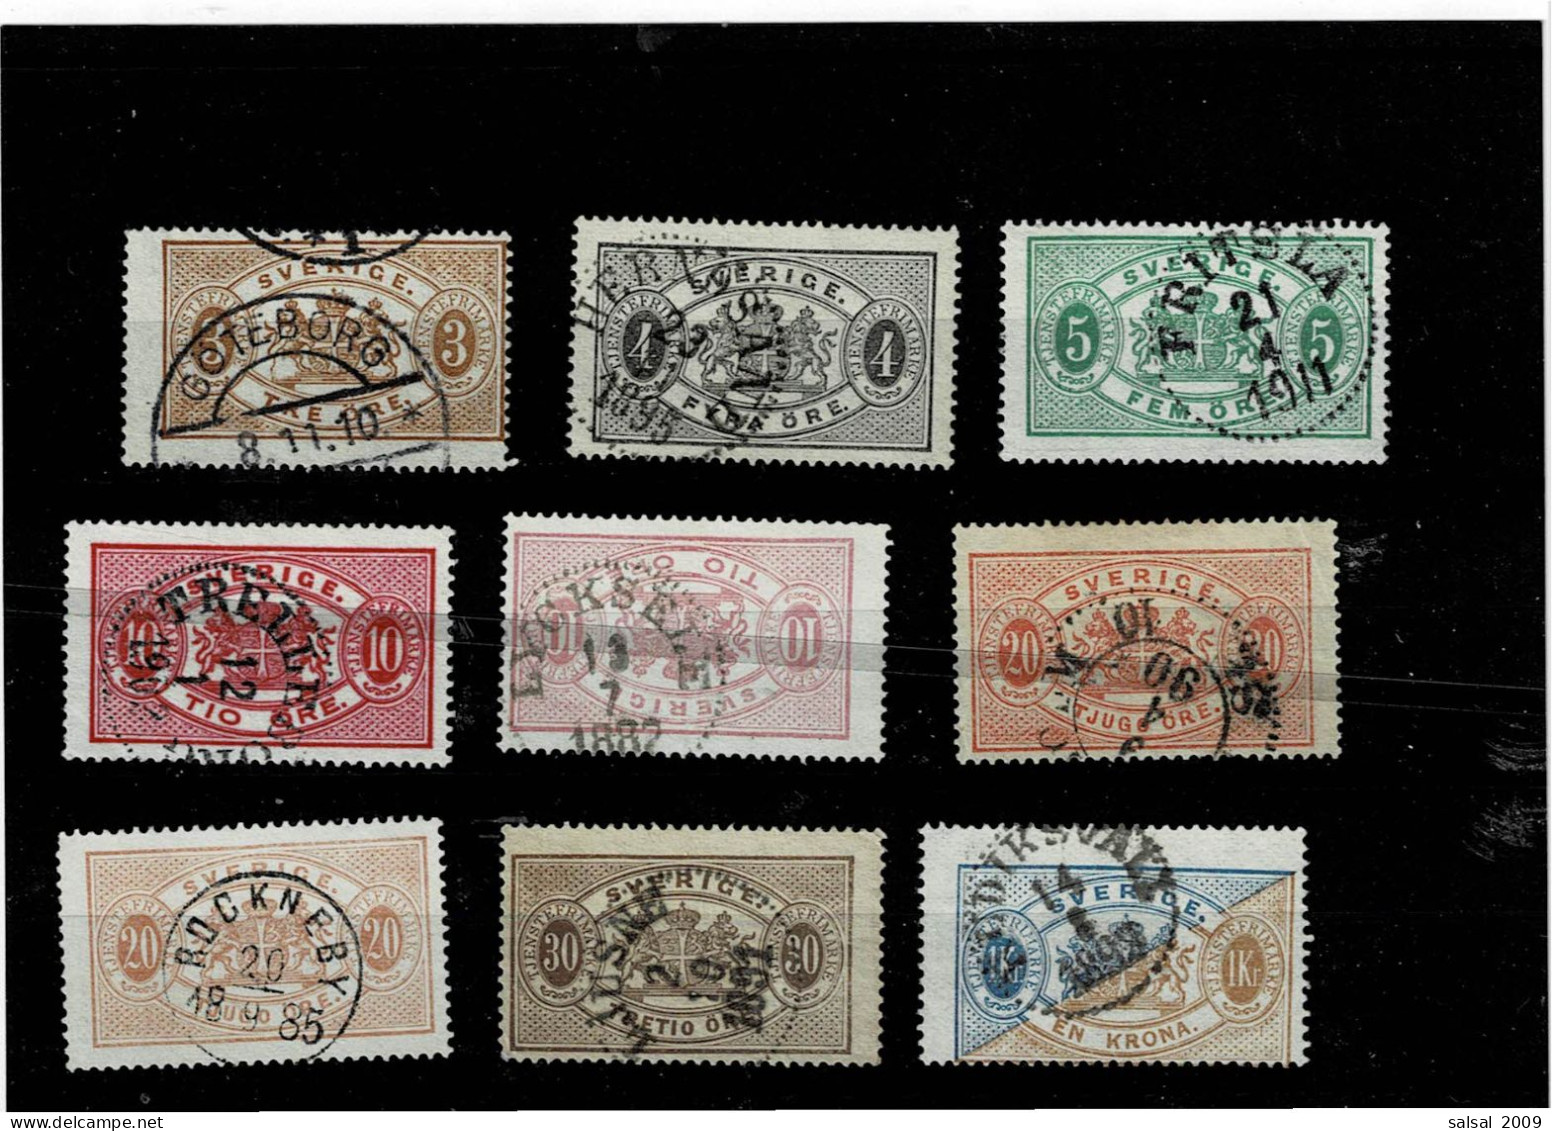 SVEZIA ,Francobolli Di Servizio ,9 Pezzi Usati Con 2 Gradazioni Di Colore ,qualita Ottima - Used Stamps